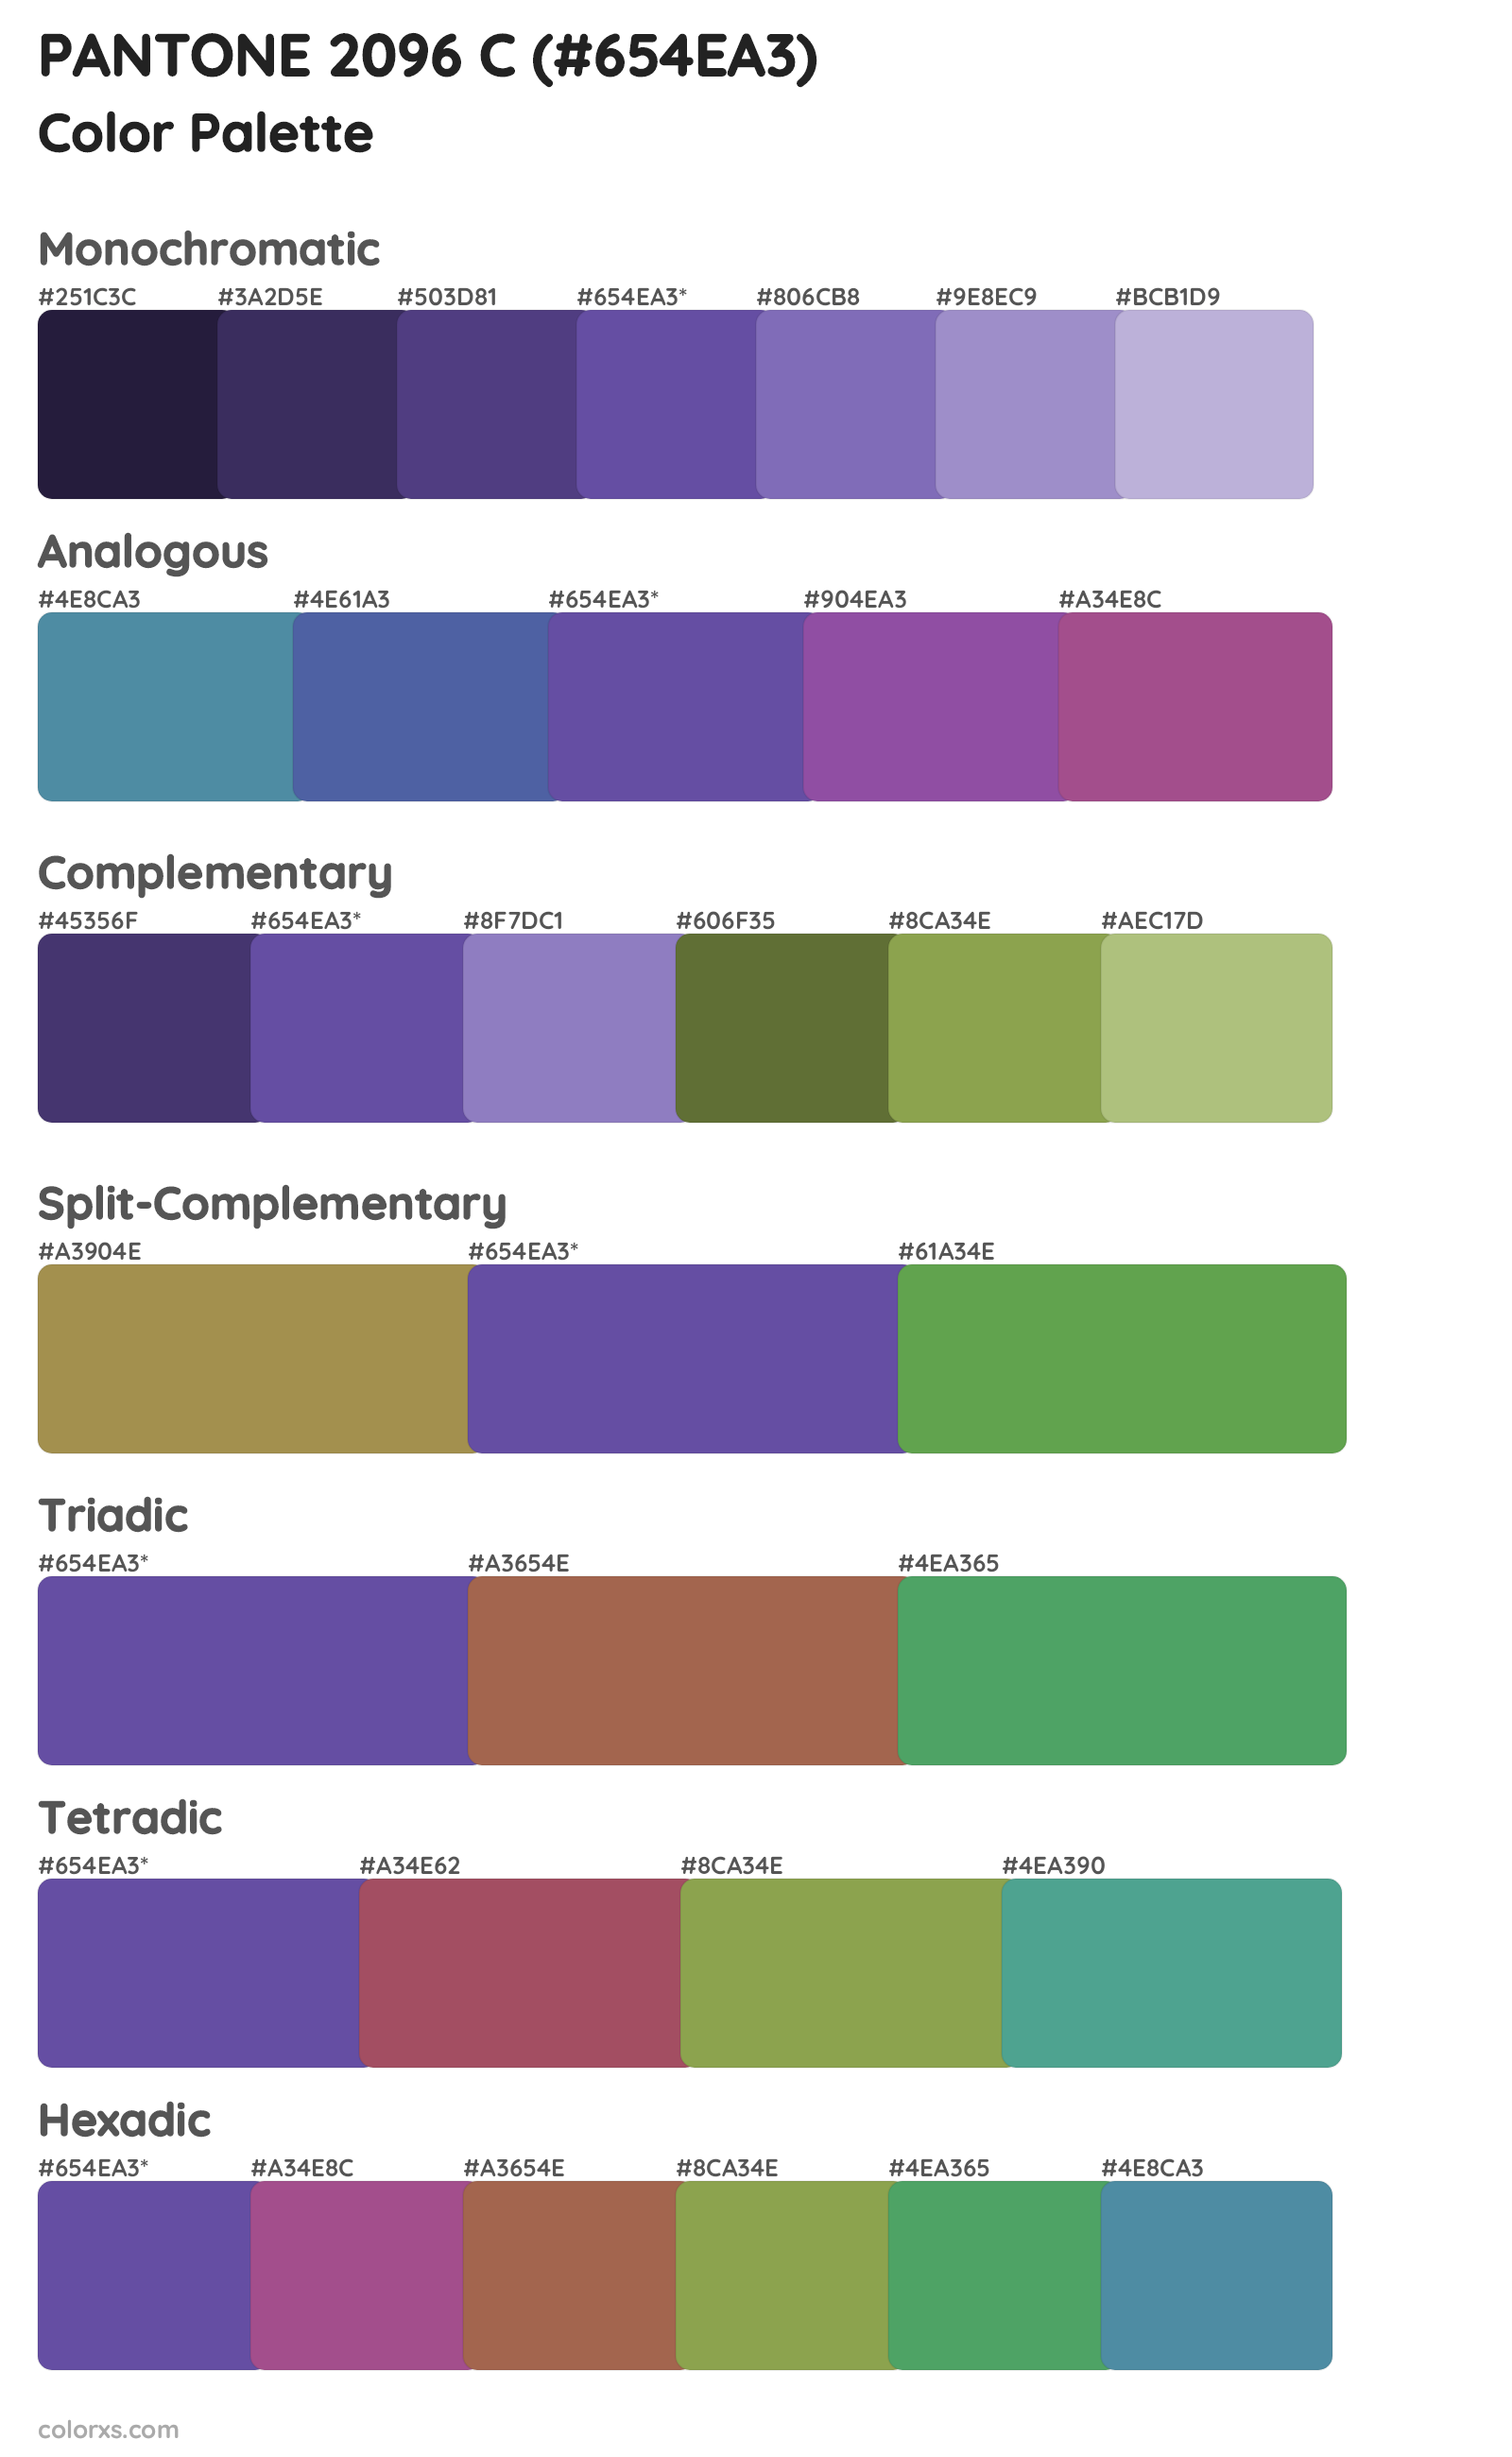 PANTONE 2096 C Color Scheme Palettes